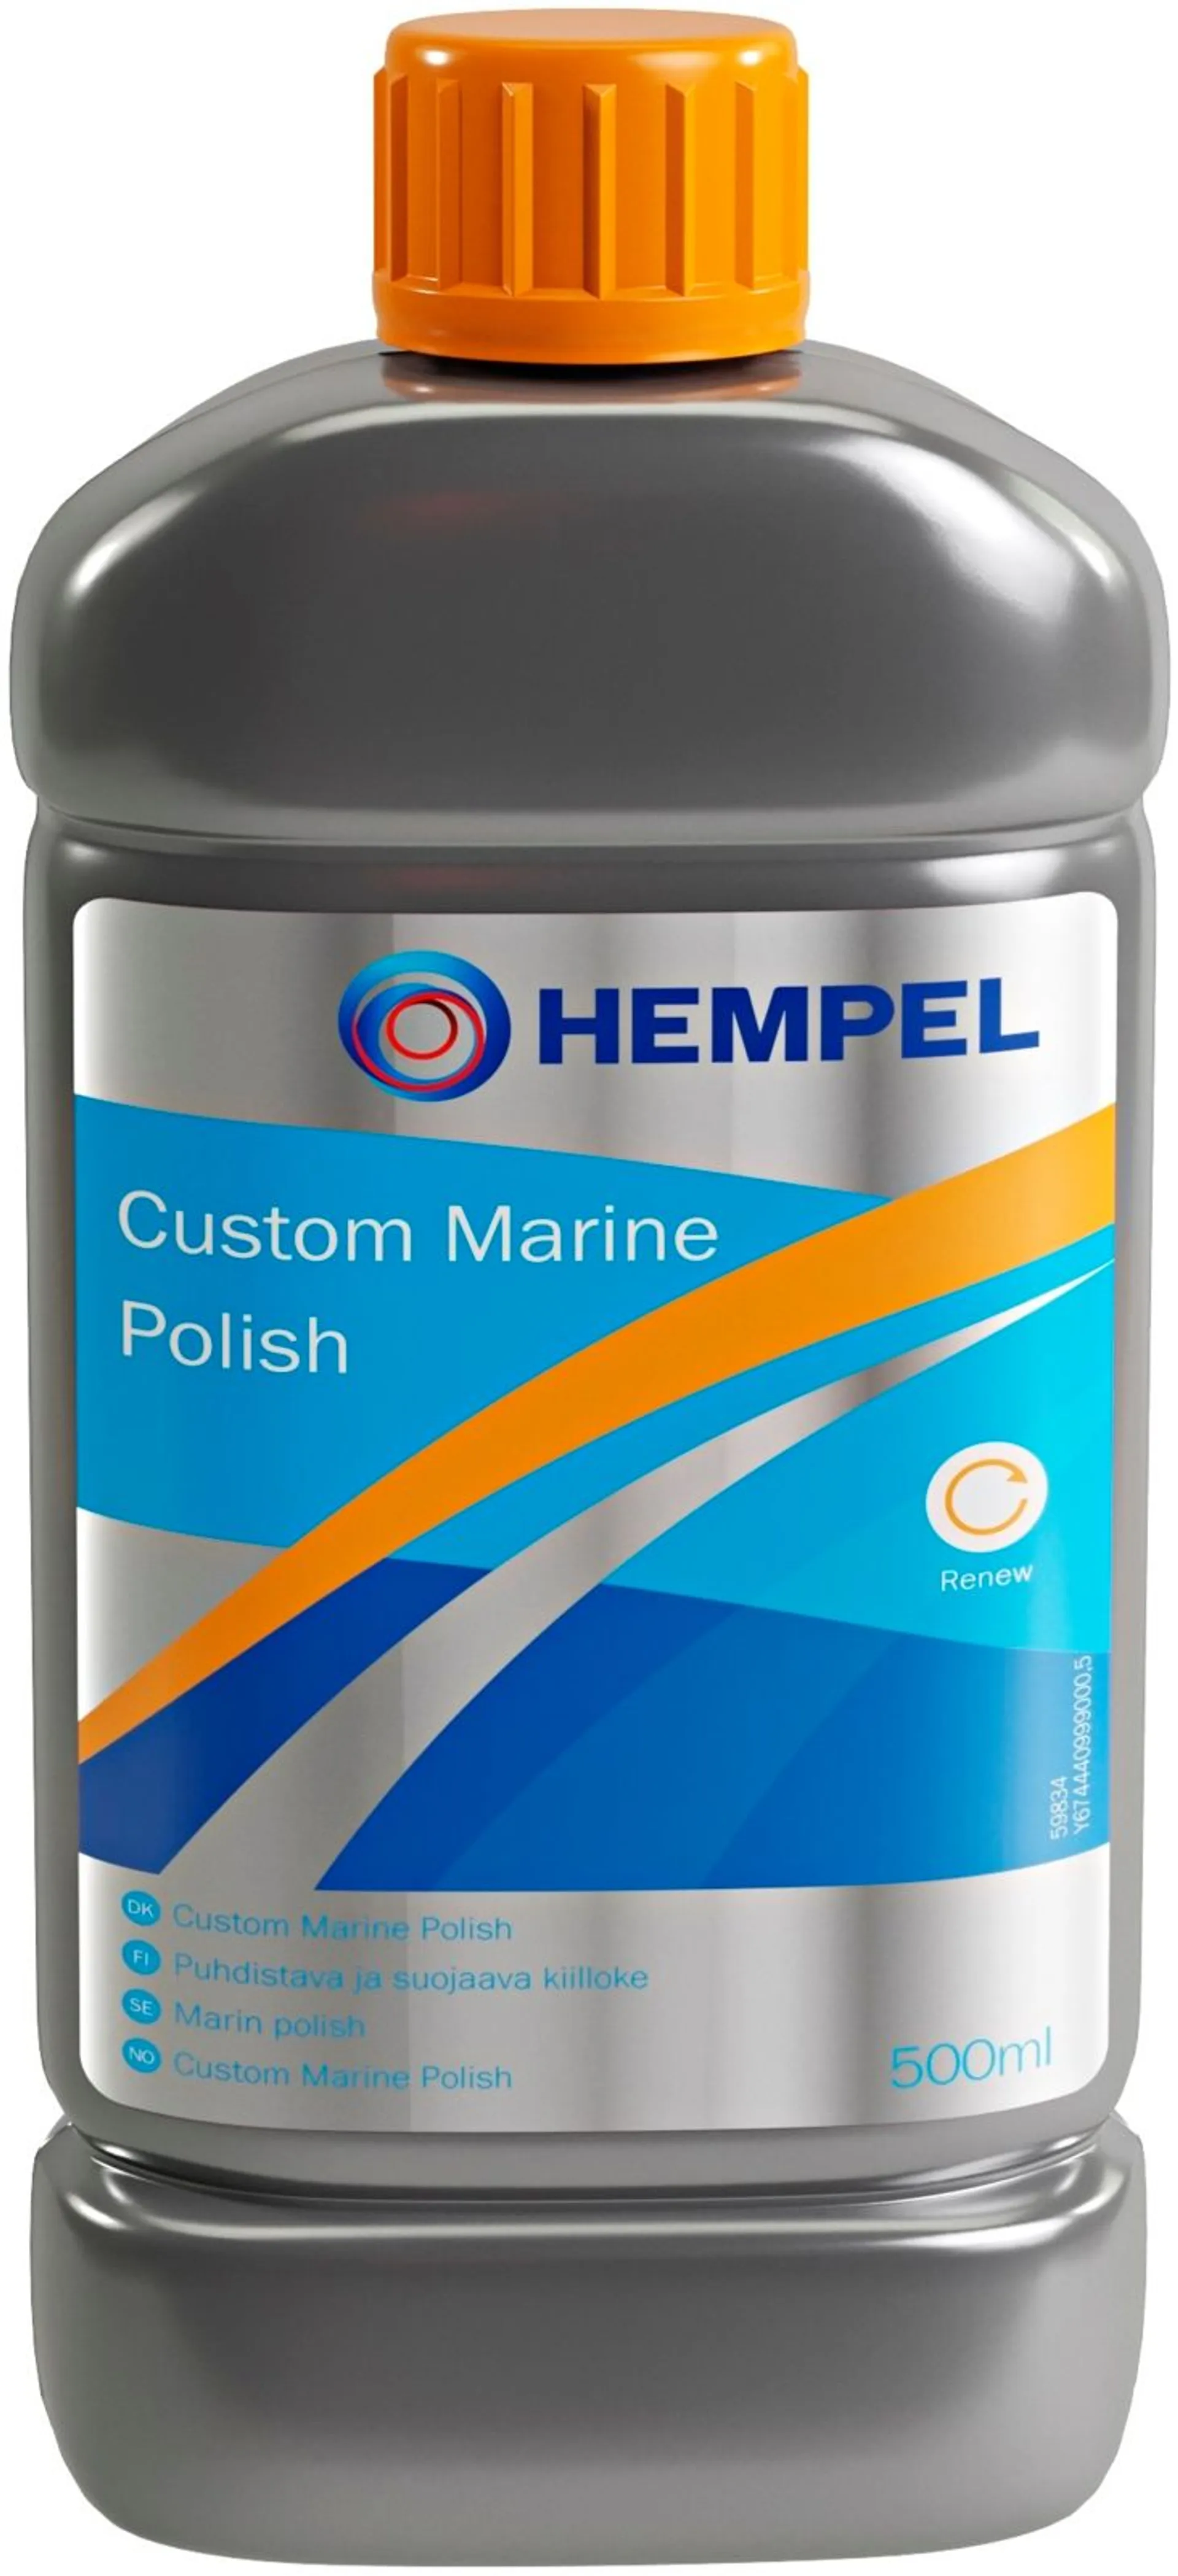 Hempel Custom Marine Polish puhdistuskiilloke 0,5 l harmahtava